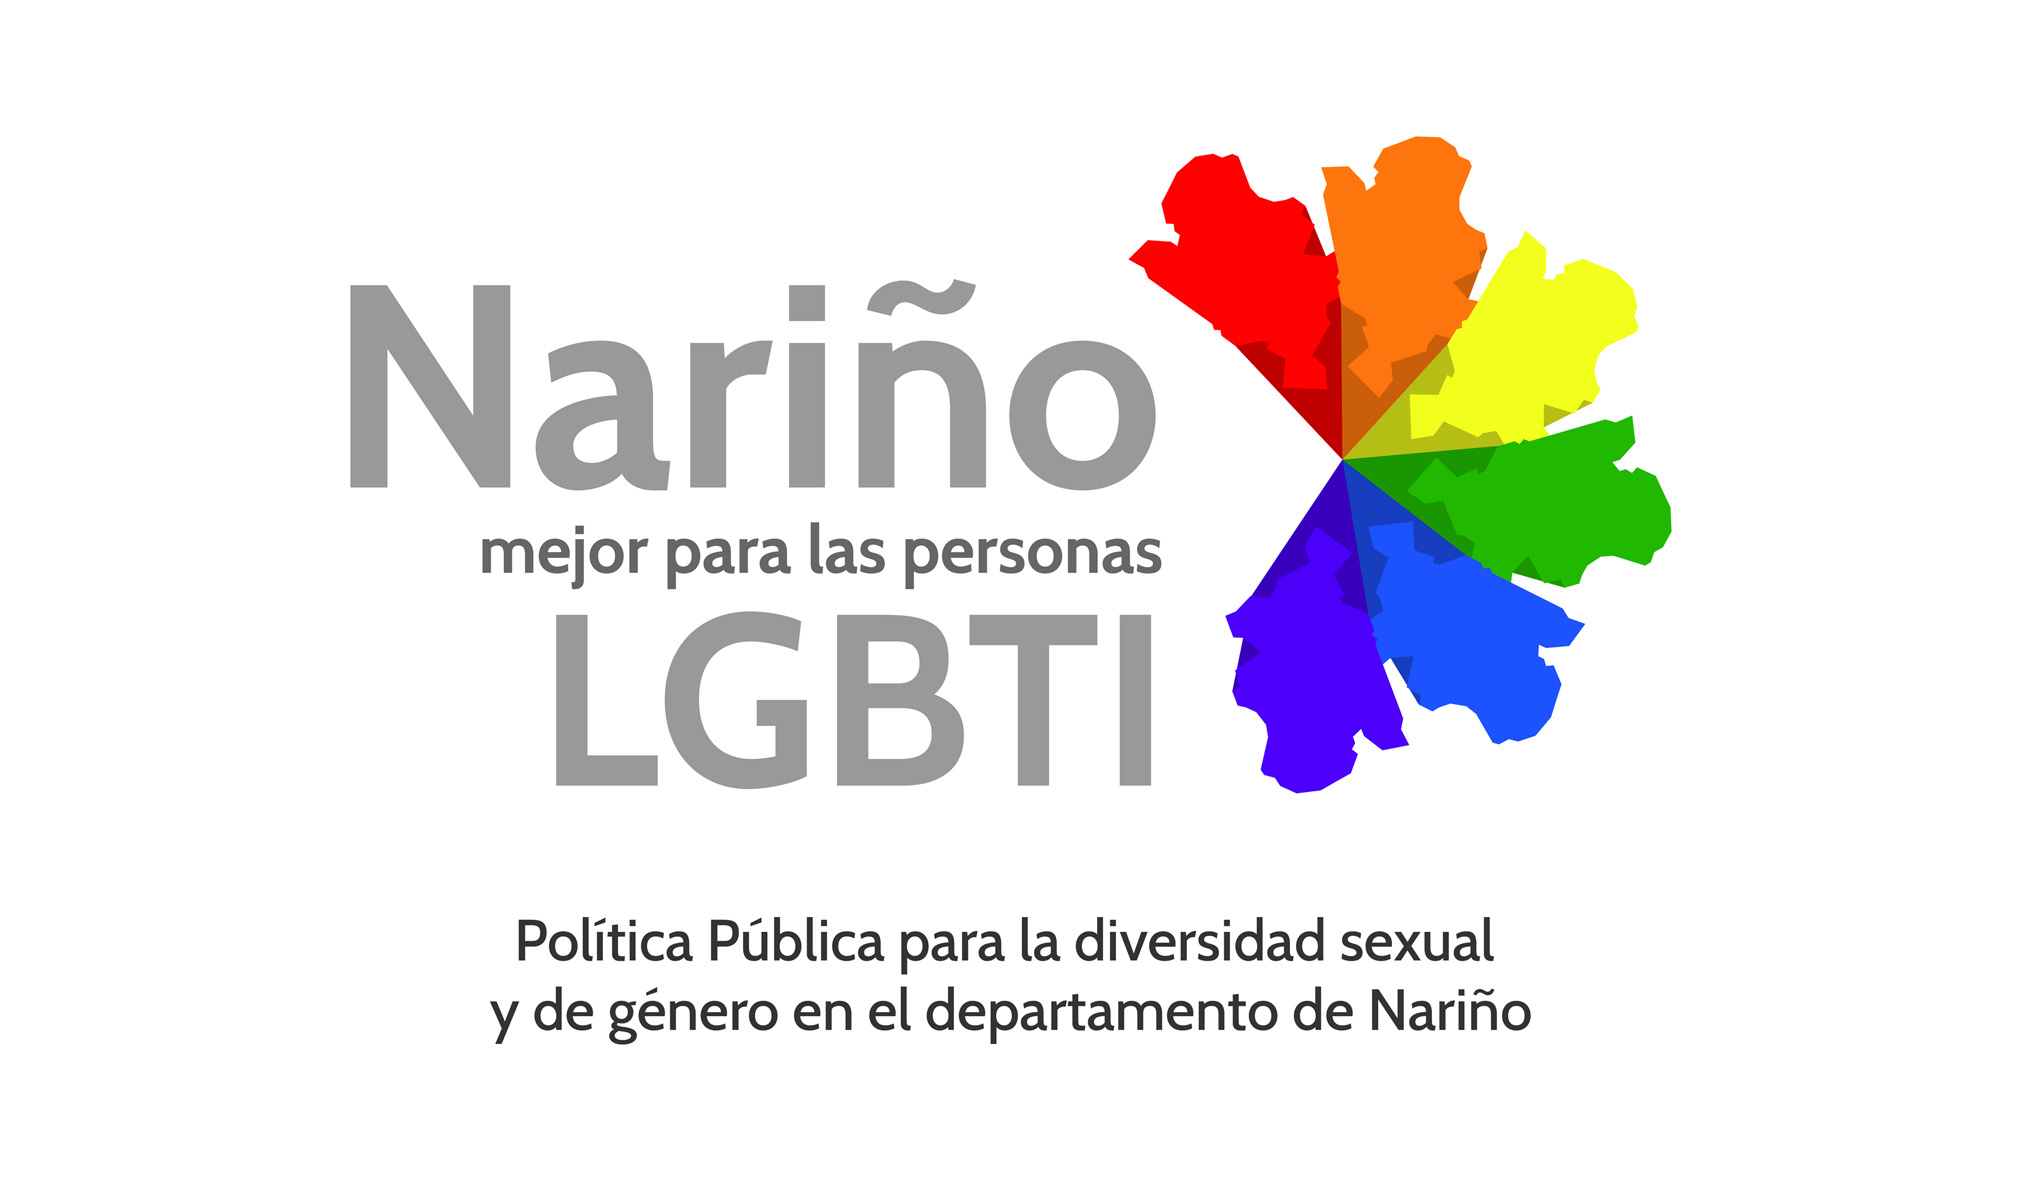 Nariño Mejor para las personas LGBTI. Política Pública para la diversidad sexual y de género en el departamento de Nariño.